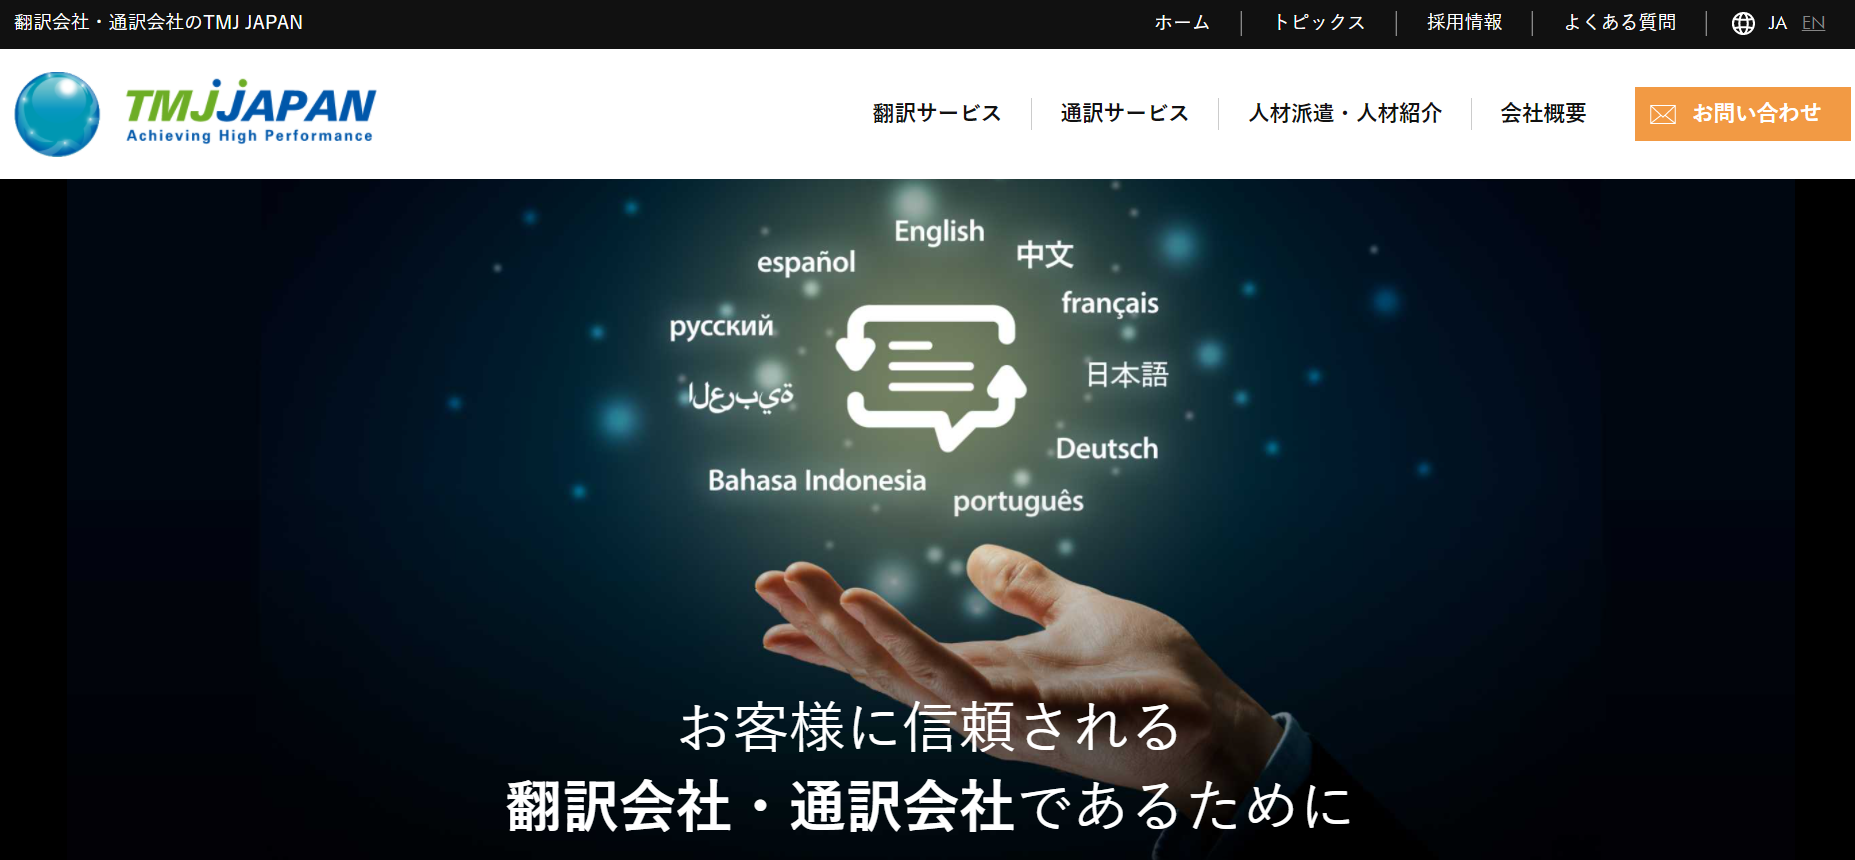 有限会社TMJ JAPANの通訳サービスサービス